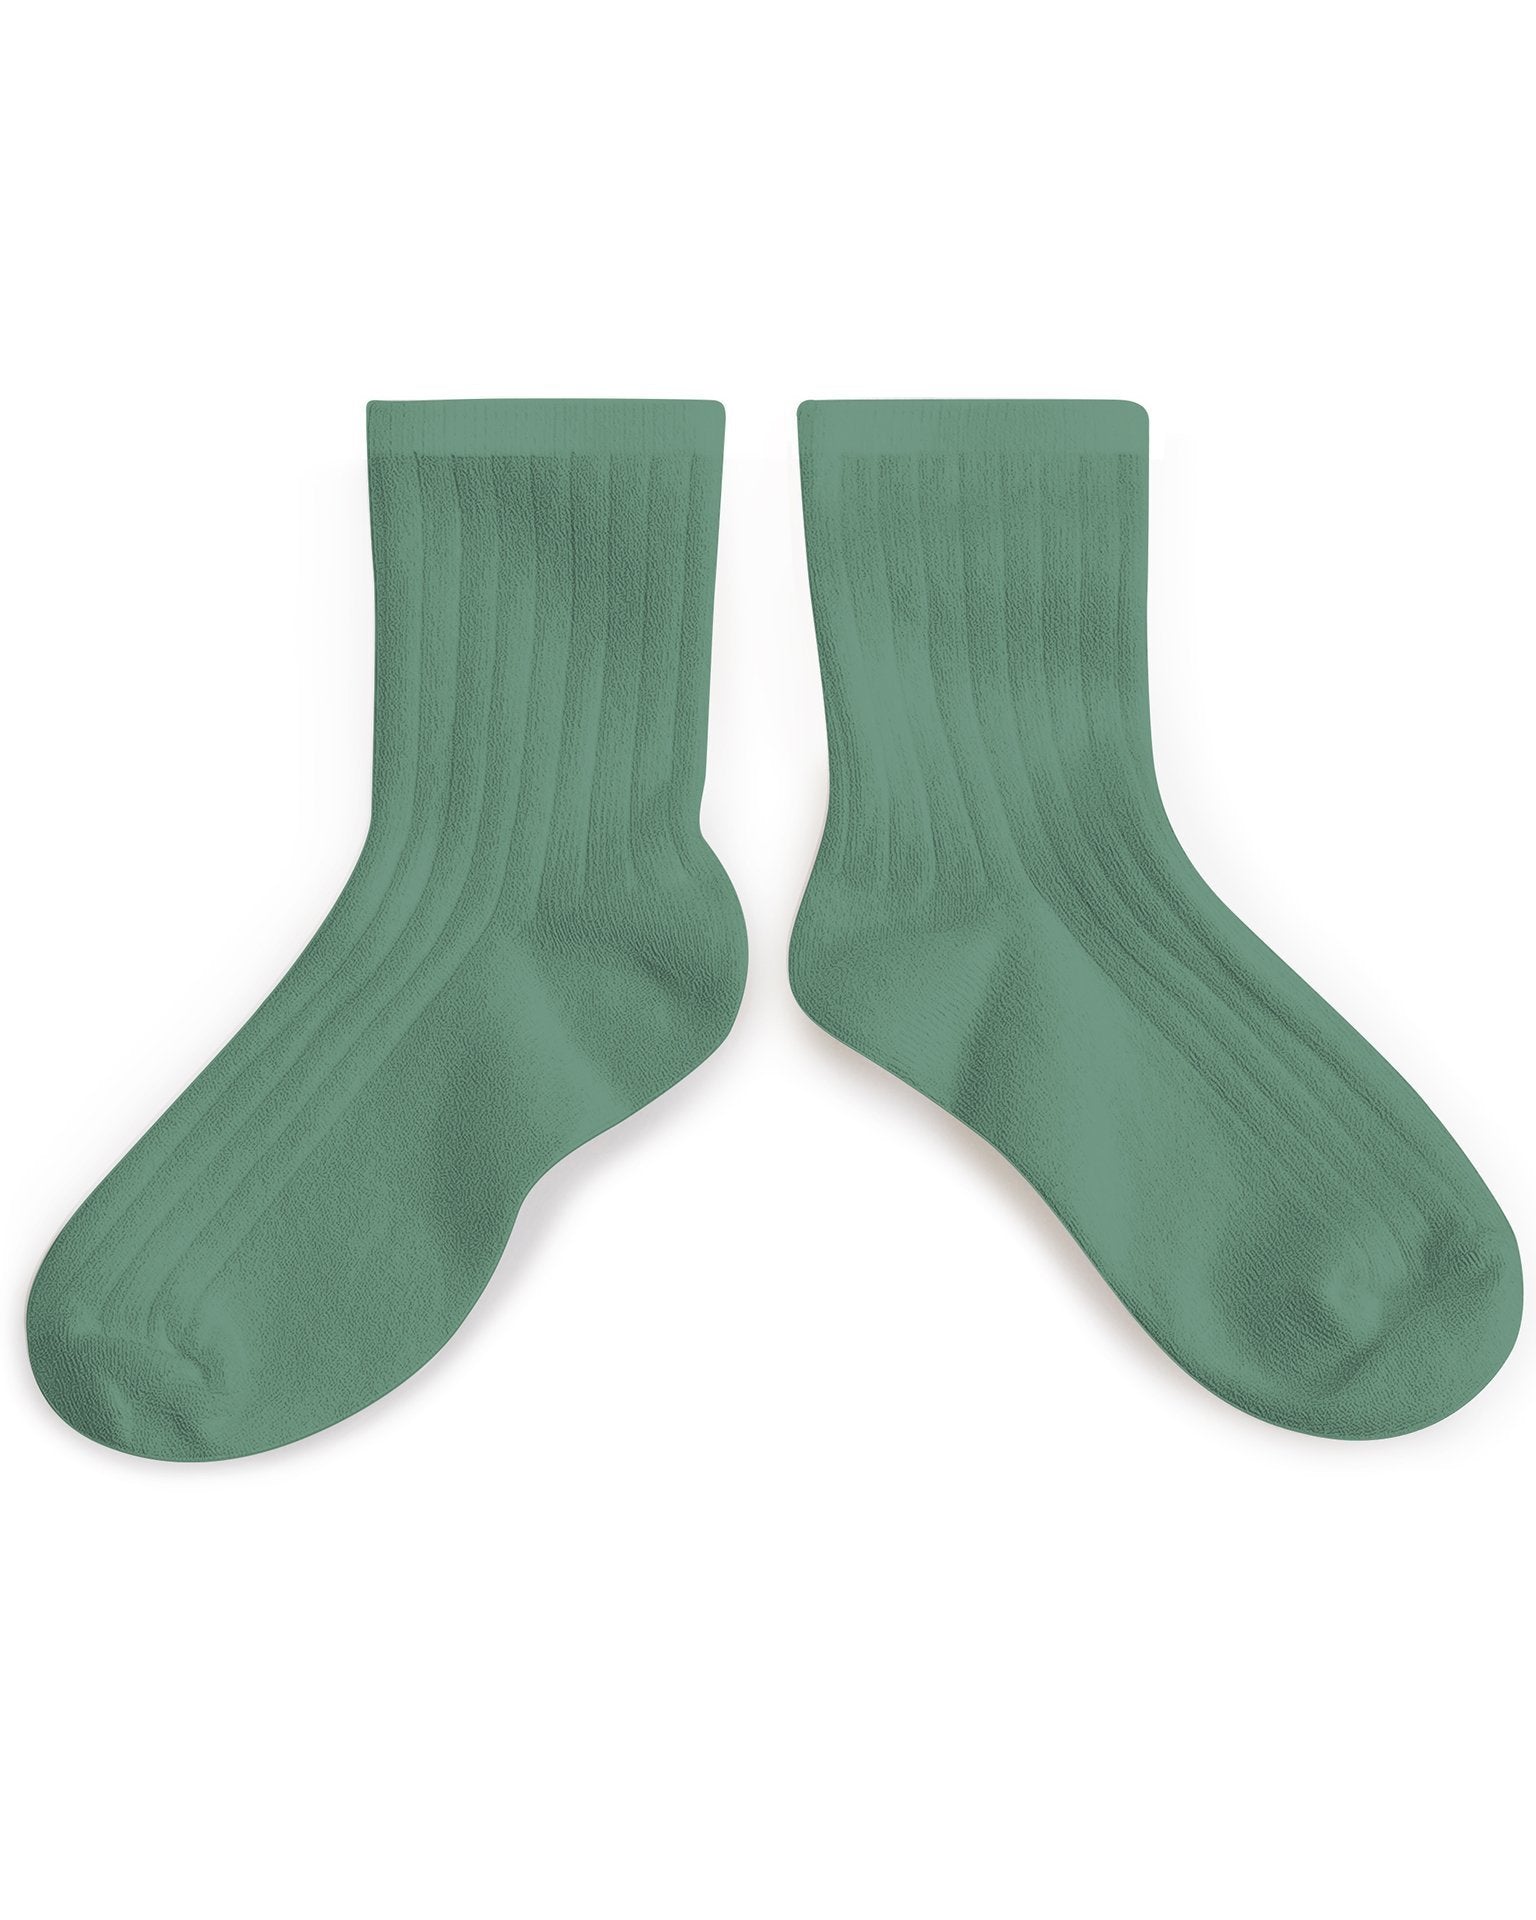 Little collegien accessories ankle socks in celadon